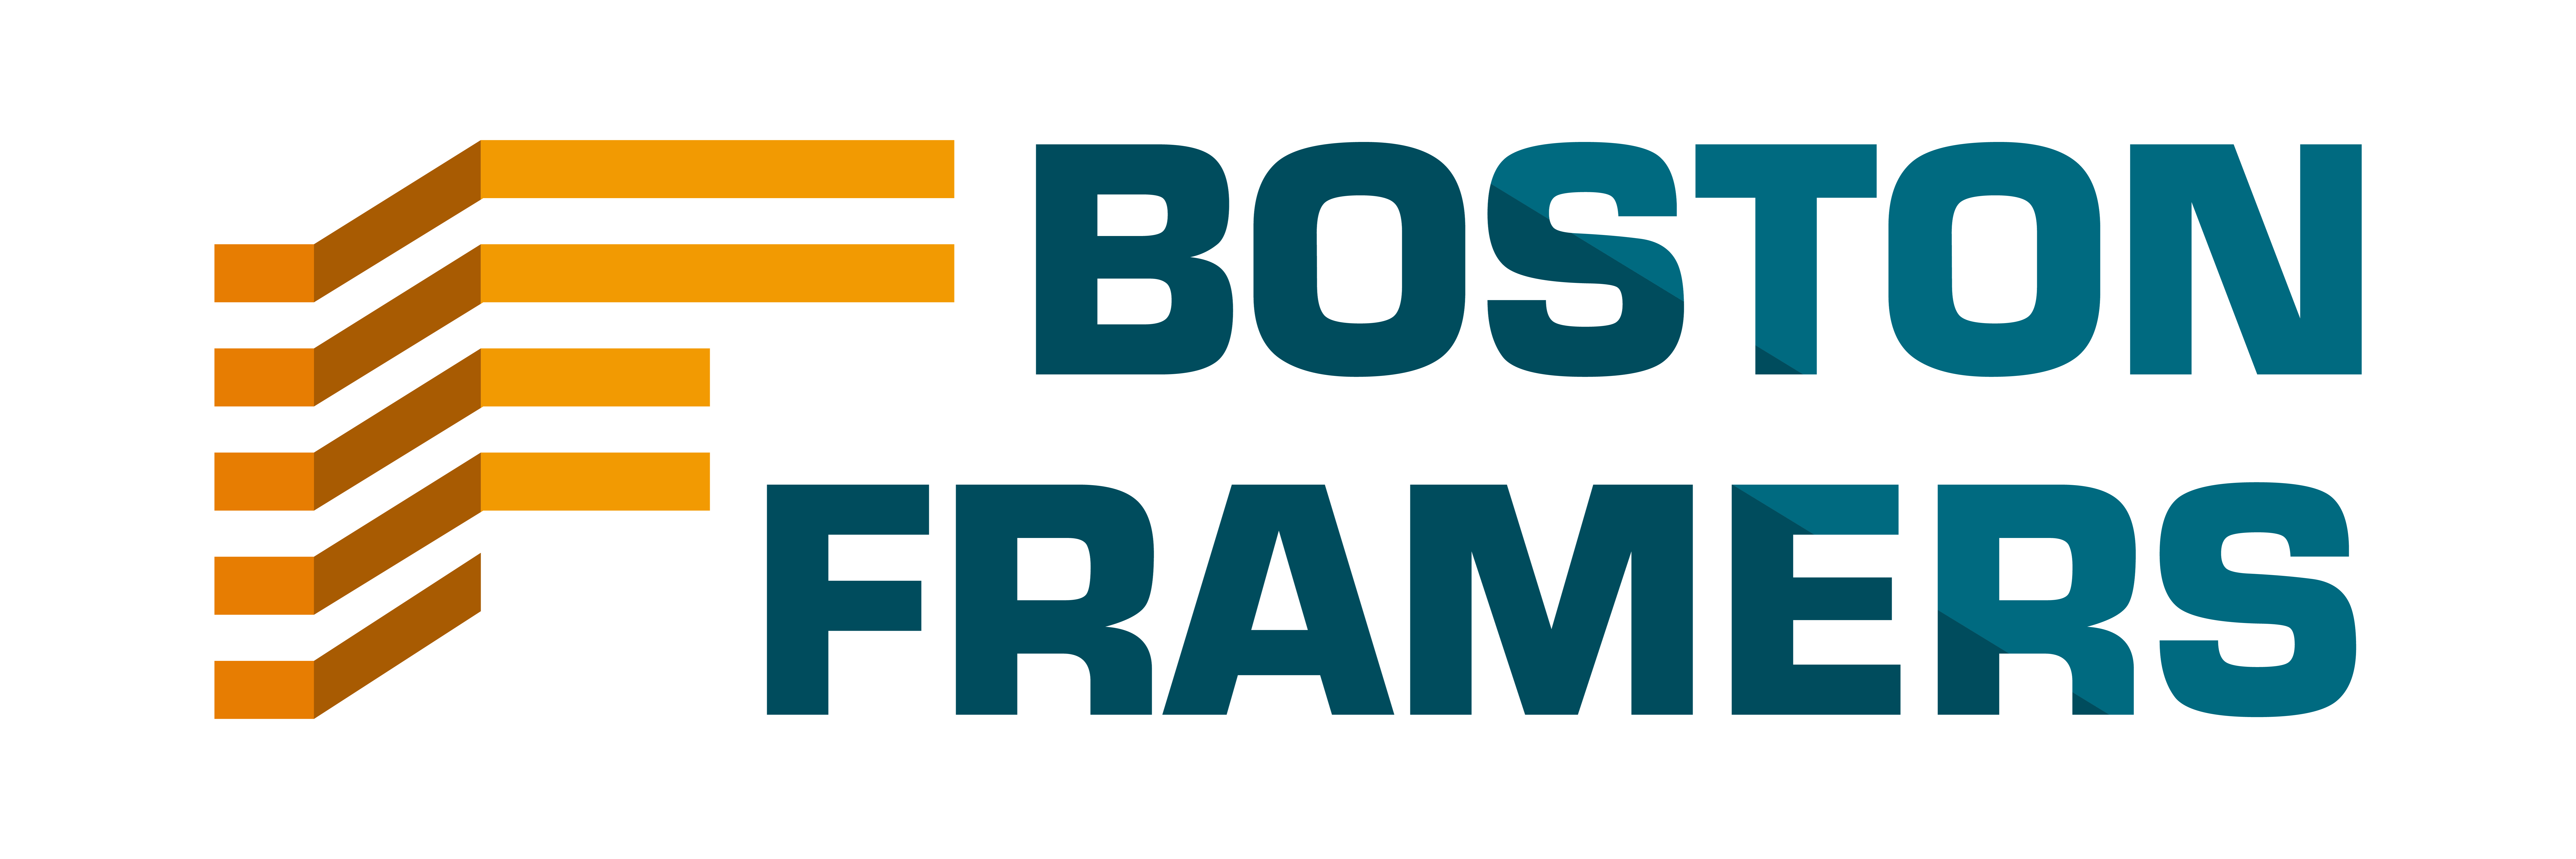 Home renovations - Boston Framer